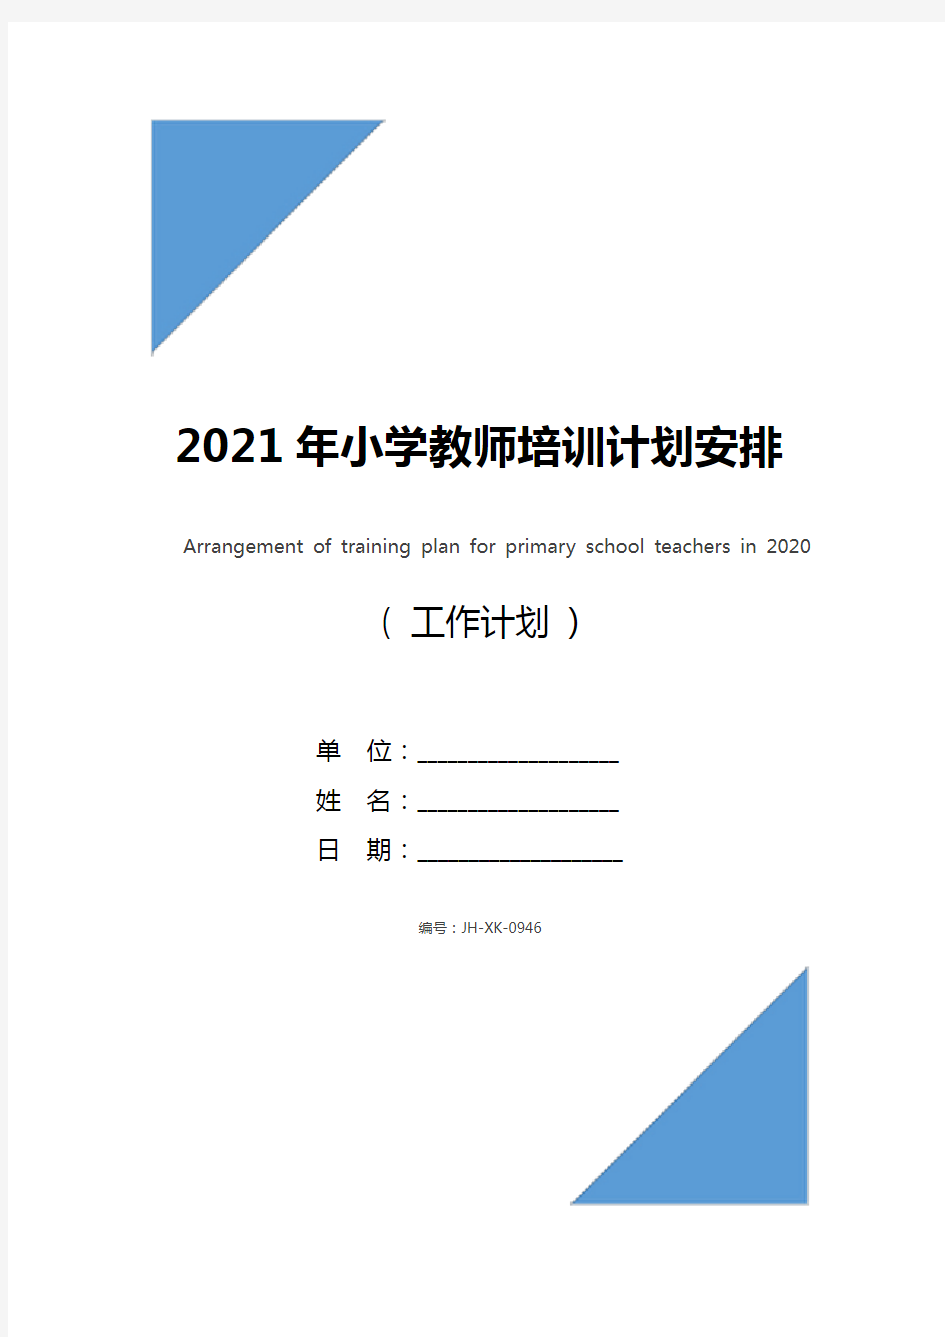 2021年小学教师培训计划安排(标准版)